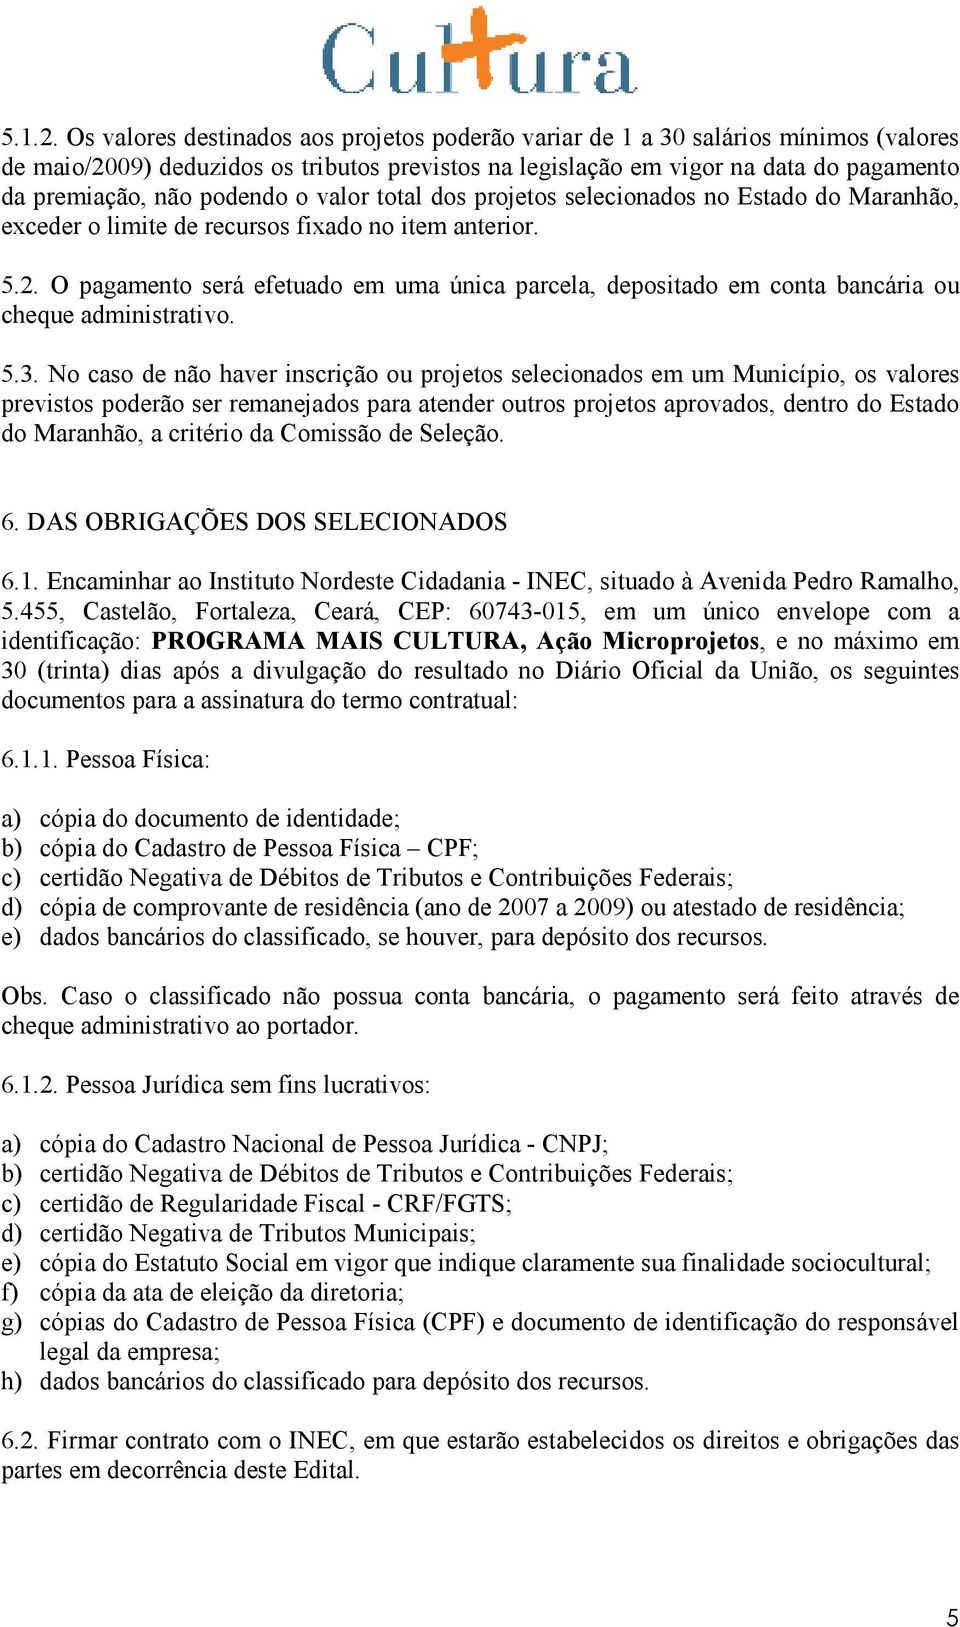 podendo o valor total dos projetos selecionados no Estado do Maranhão, exceder o limite de recursos fixado no item anterior. 5.2.